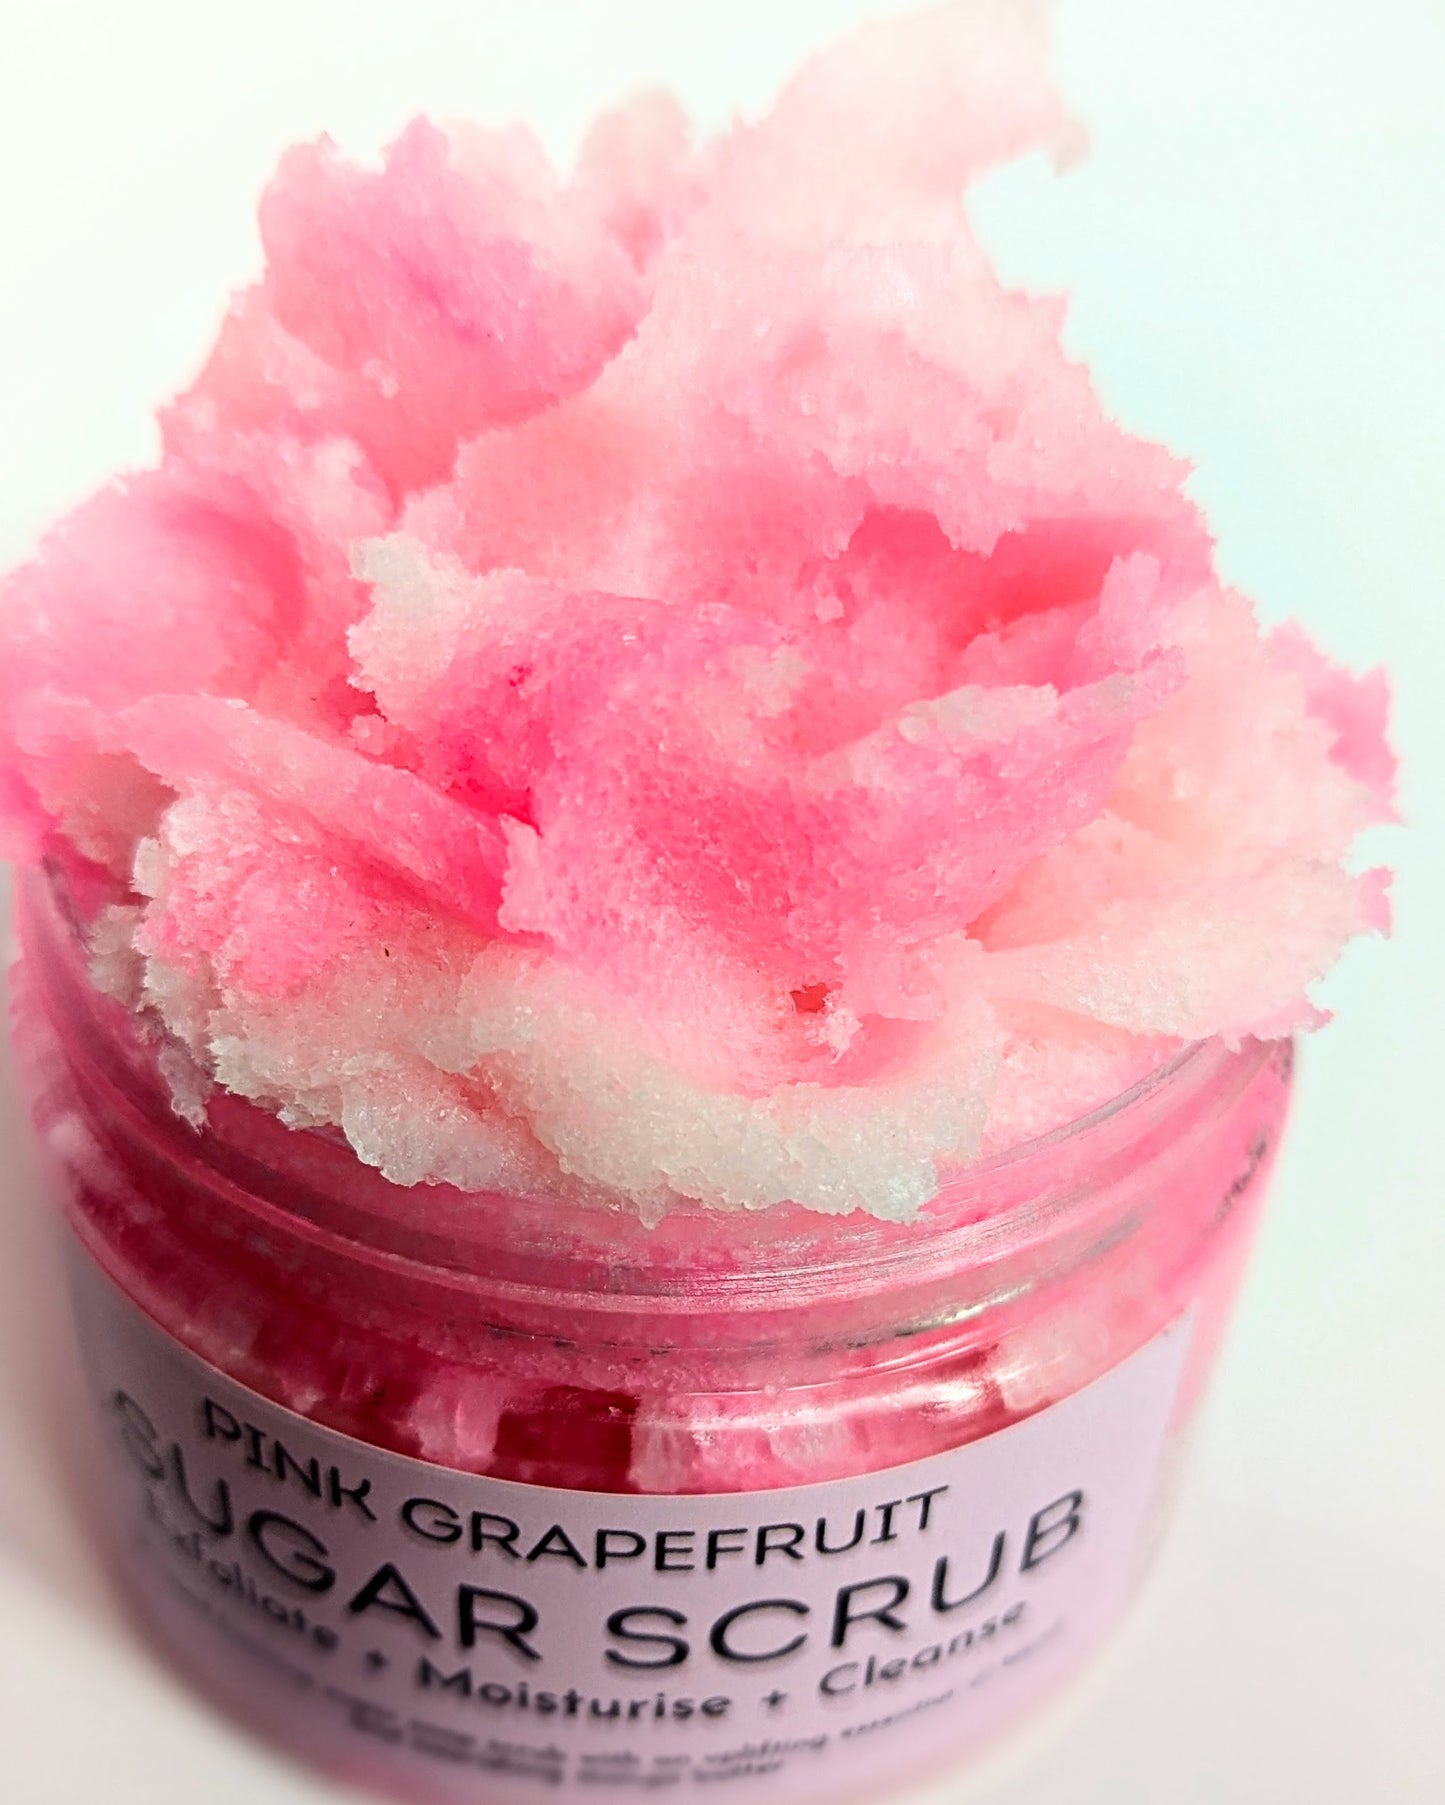 Pink Grapefruit Sugar Scrub